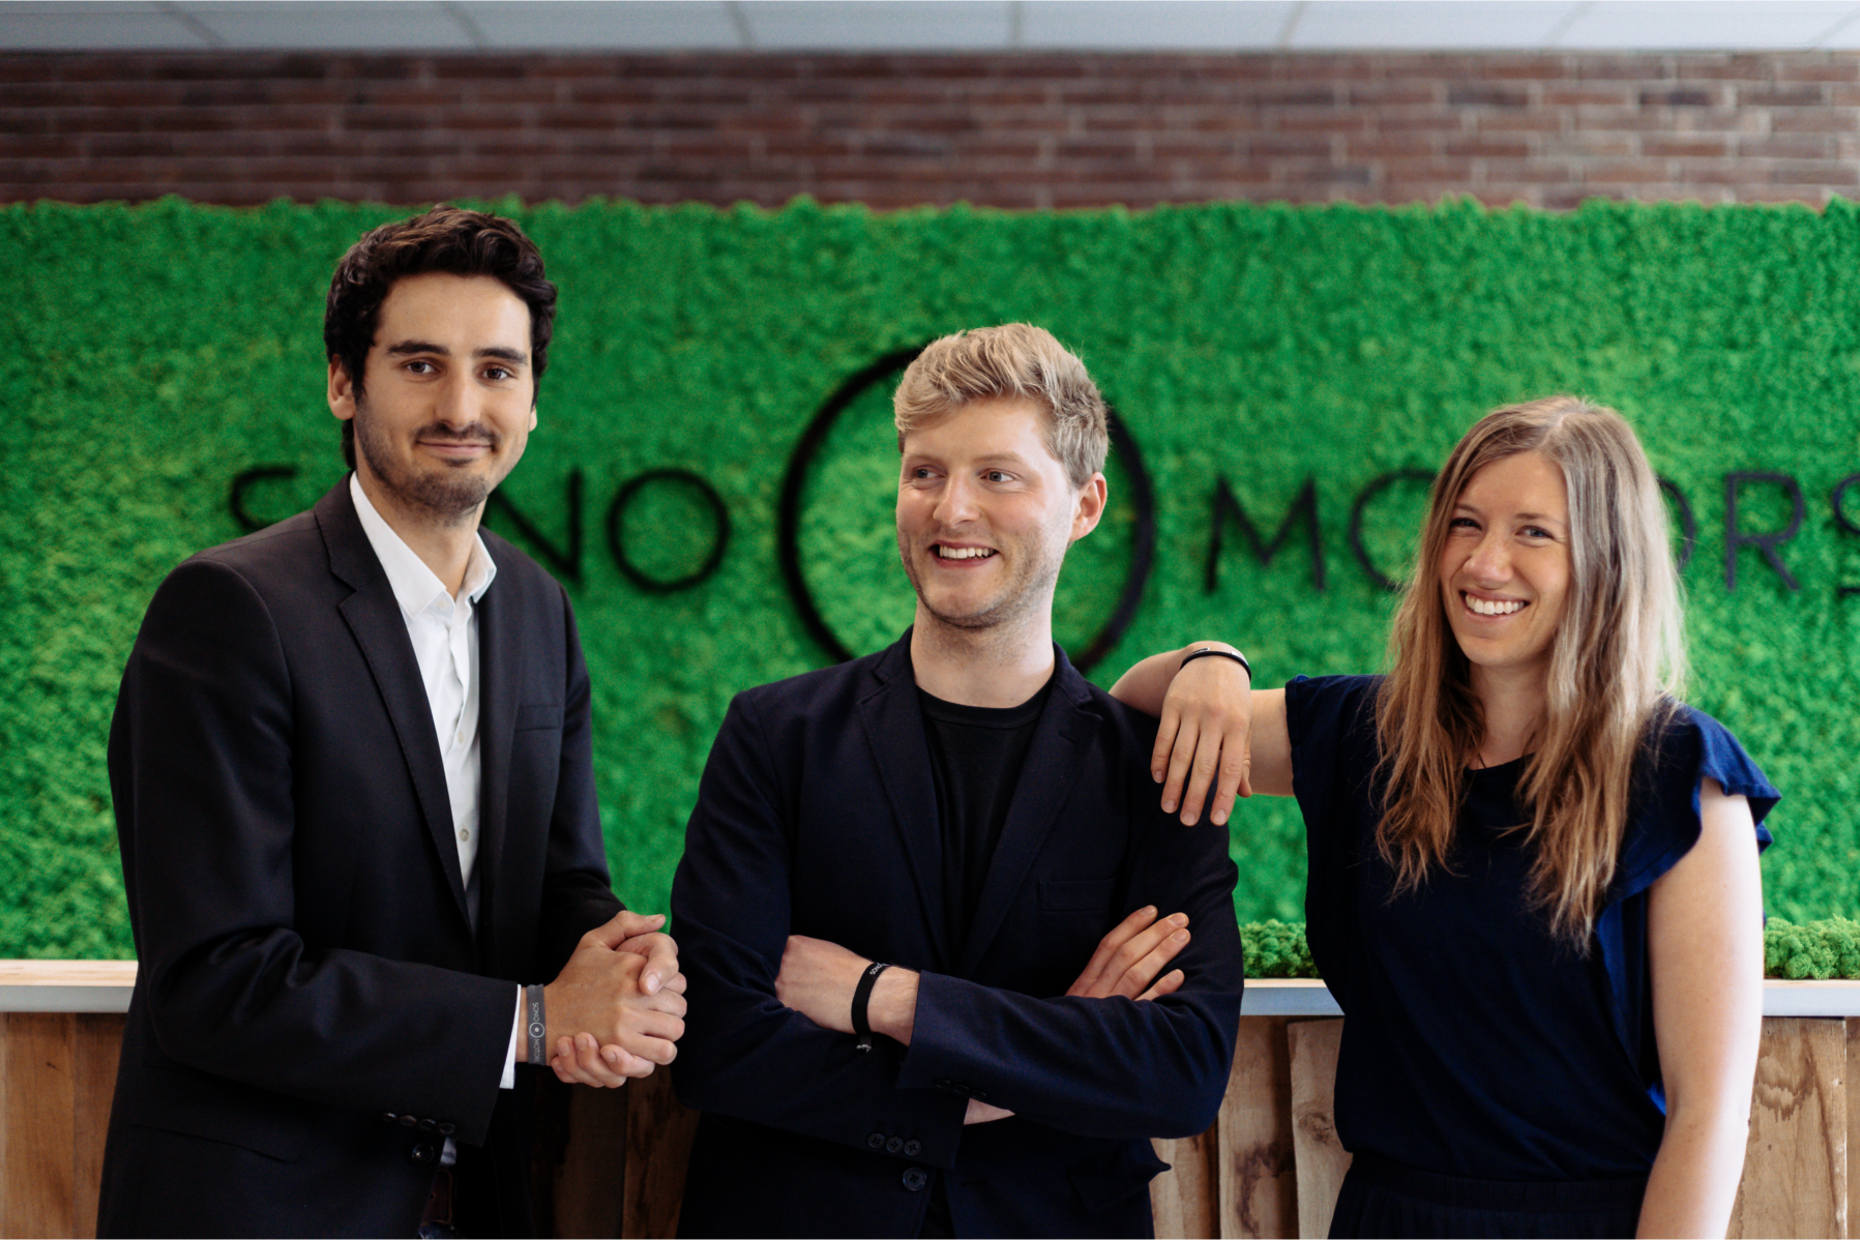 Partnersuche fürs Startup – so haben sich bekannte Gründerteams gefunden